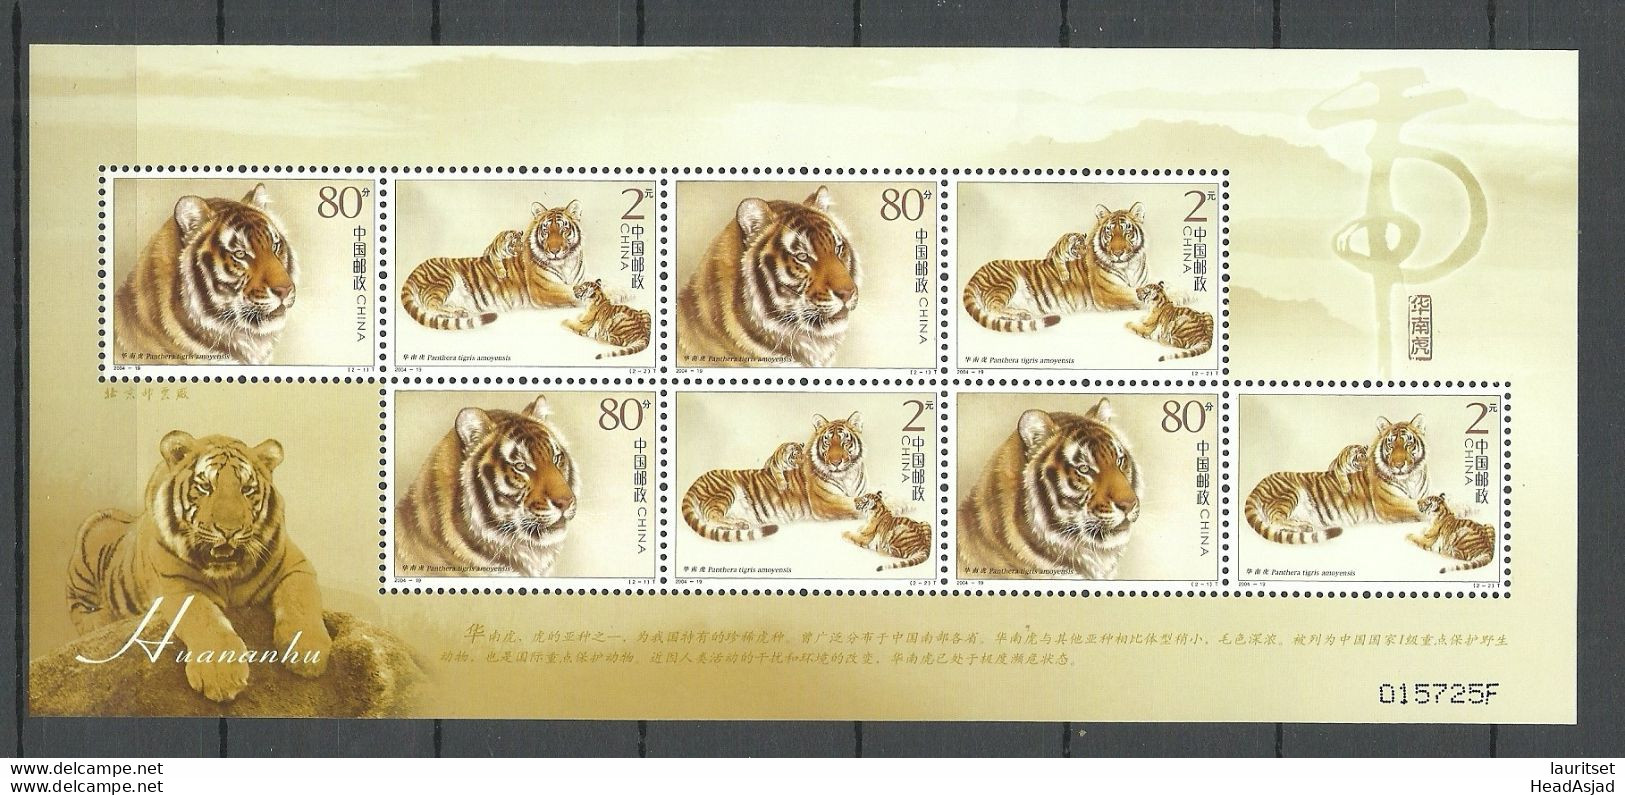 CHINA 2004 Tiger Sheetlet Kleinbogen MNH - Félins